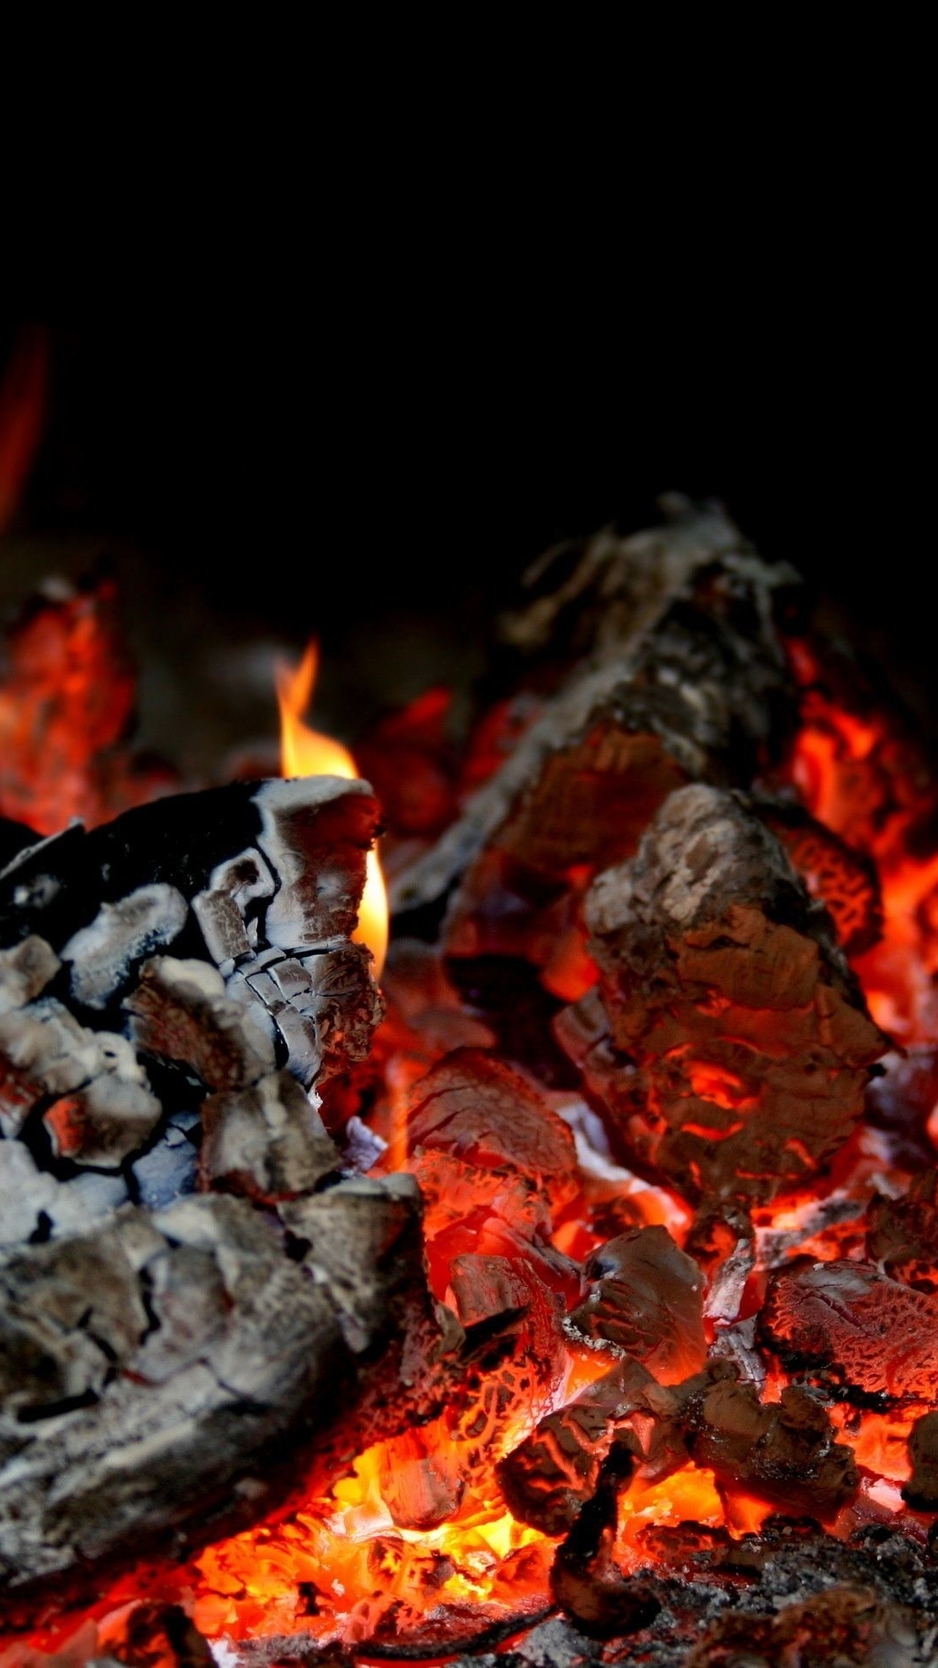 Картинка: Уголь, огонь, тепло, тёмный фон